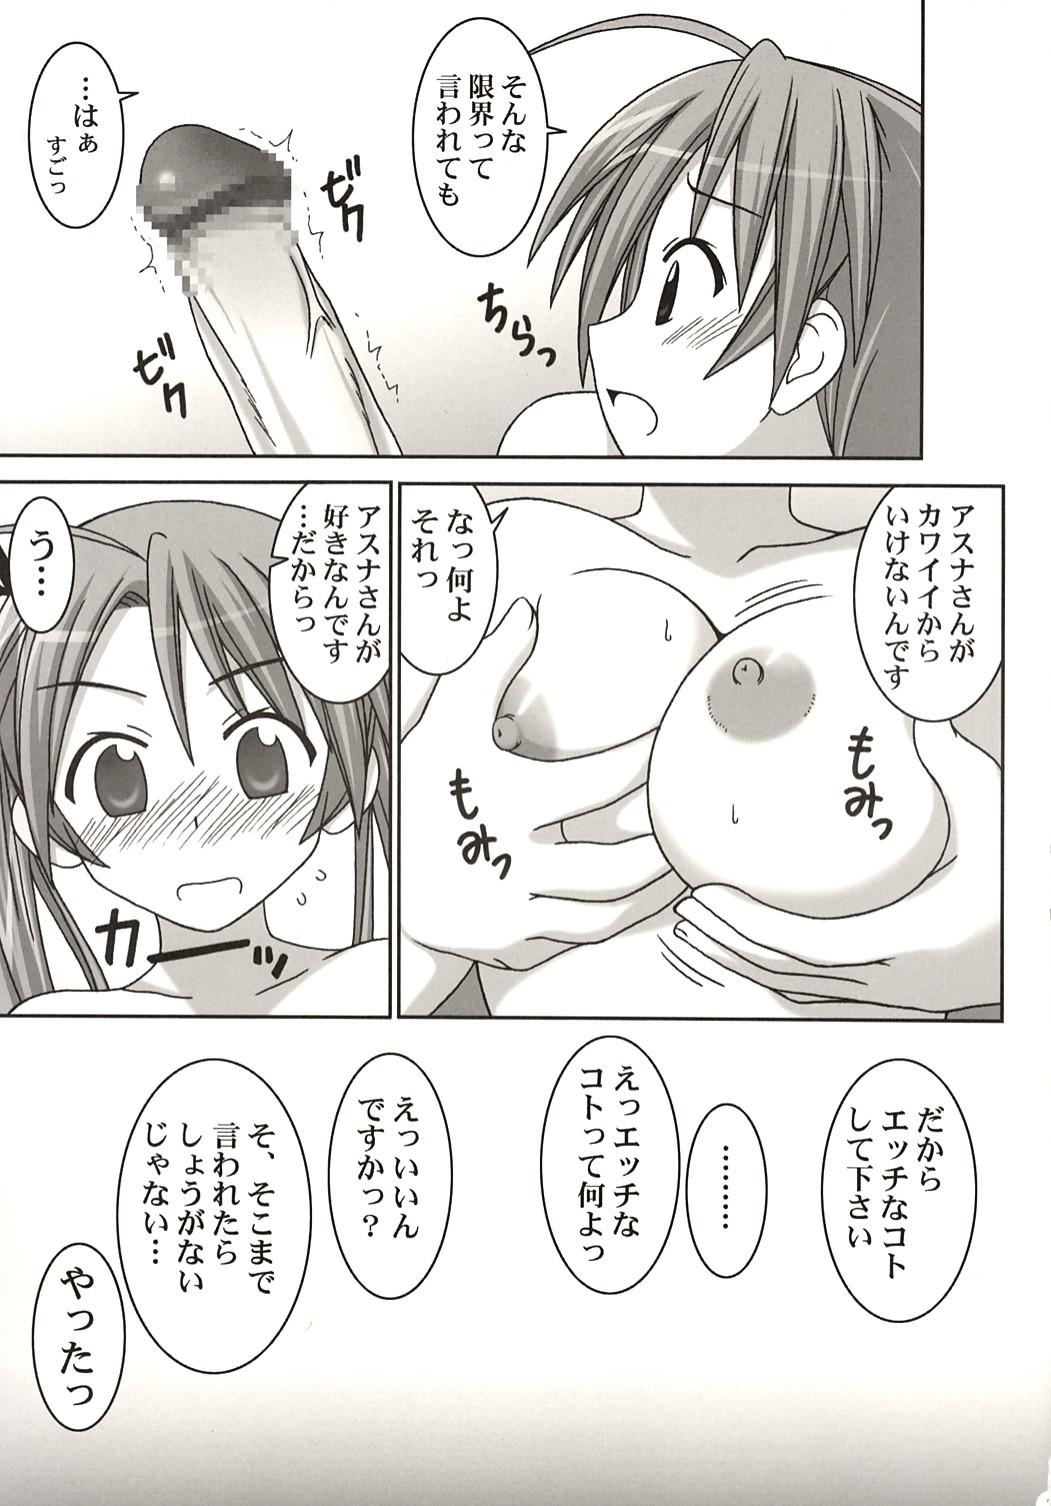 Asses Asuna vs Negi - Mahou sensei negima Ass Sex - Page 7